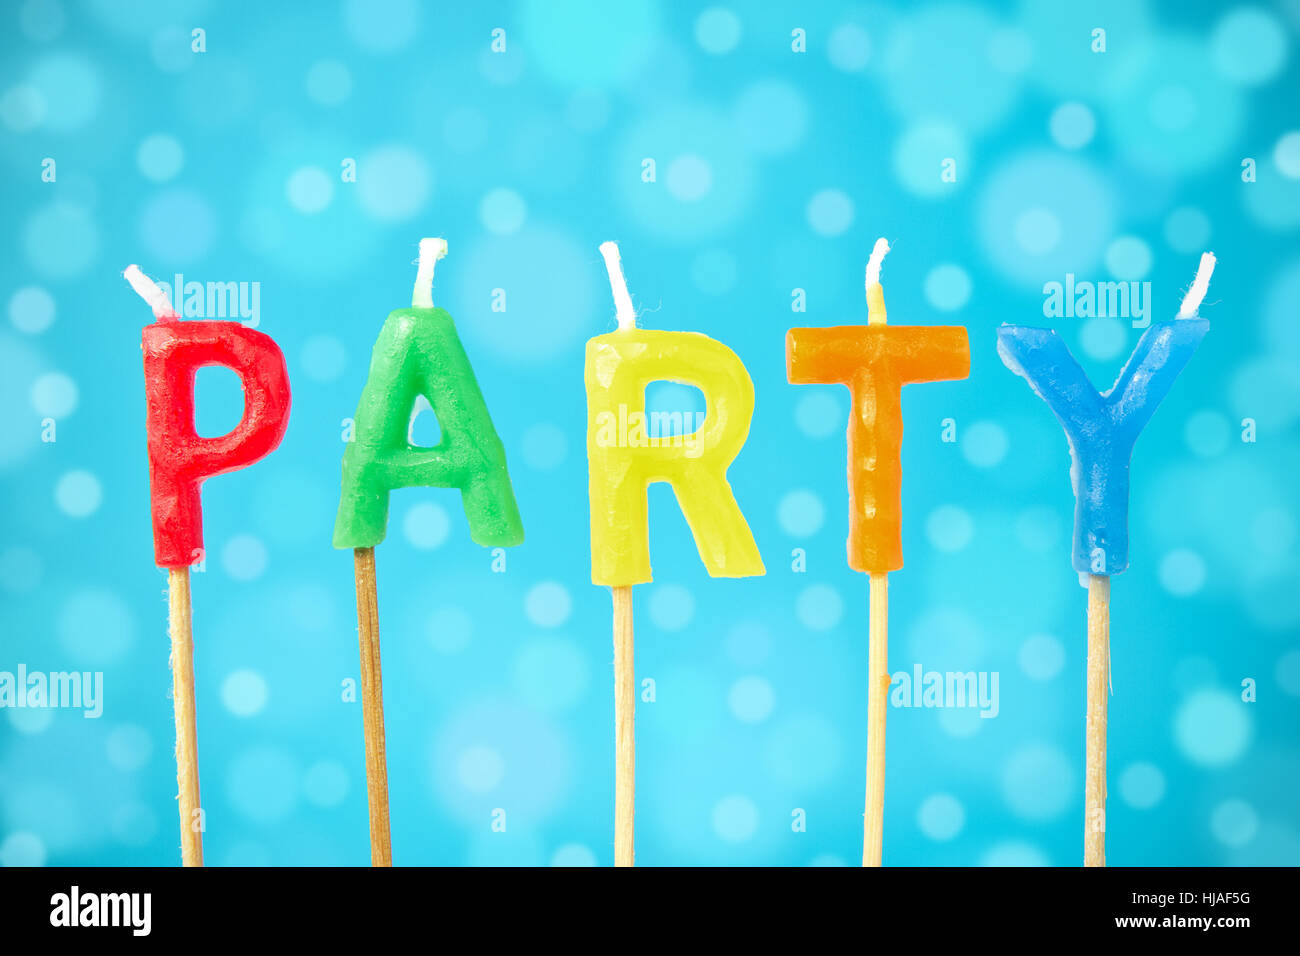 celebrate, reveling, revels, celebrates, candle, word, party, celebration, Stock Photo